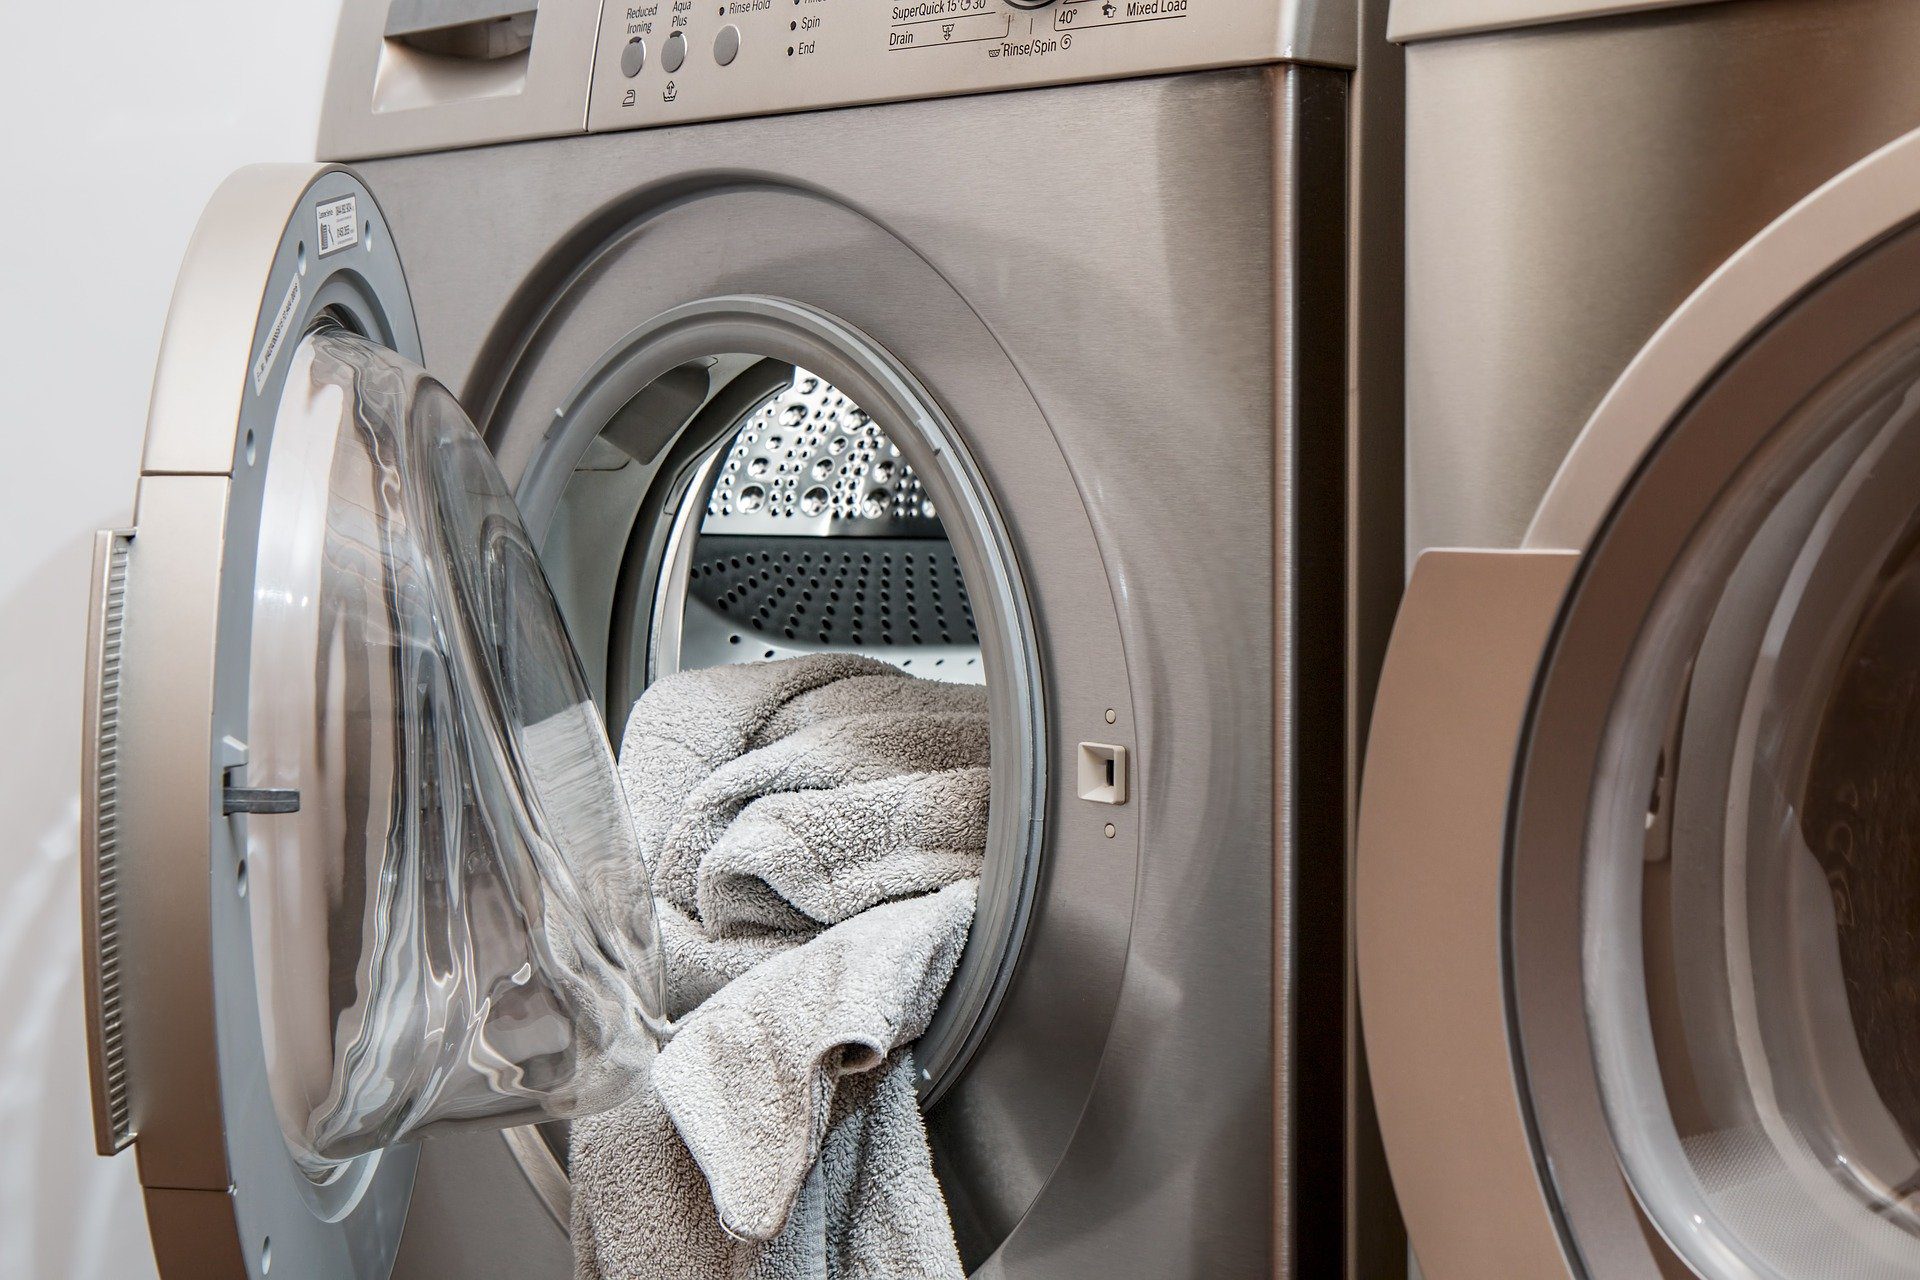 Bir çamaşır makinesinde farklı çamaşır tiplerine ve farklı kirlilik durumuna sahip çamaşırlar için kullanabileceğiniz birbirinden farklı özelliklerde yıkama programı seçenekleri bulunmaktadır. Bu şekilde çamaşırlarınız için en uygun su sıcaklıklarında ve yıkama tekniklerinde makinede yıkanabilmesi sağlanabilmektedir. Çamaşır makinenizin yıkama programı seçeneklerinin her biri yıkama işlemini nasıl gerçekleştirdiğine bağlı olarak farklı süreler almaktadır. Bu nedenle her yıkama programı aynı sürede bitmez. Dijital gösterge paneli olan makinelerde bunu dakika olarak takip edebilirsiniz. Bu yüzden çamaşır makinesinin bir program kısa sürmesi, diğer program uzun sürmesi normaldir. Ancak seçtiğiniz yıkama programında olması gerekenden daha uzun sürmesi durumunda makinenizde bir sorun olabilir. Gerekli kontroller için profesyonel destek almak üzere Sultanbeyli Arçelik Servisi hizmetlerimize başvuruda bulunmalısınız. - camasir kurutma makinasi beyazesya